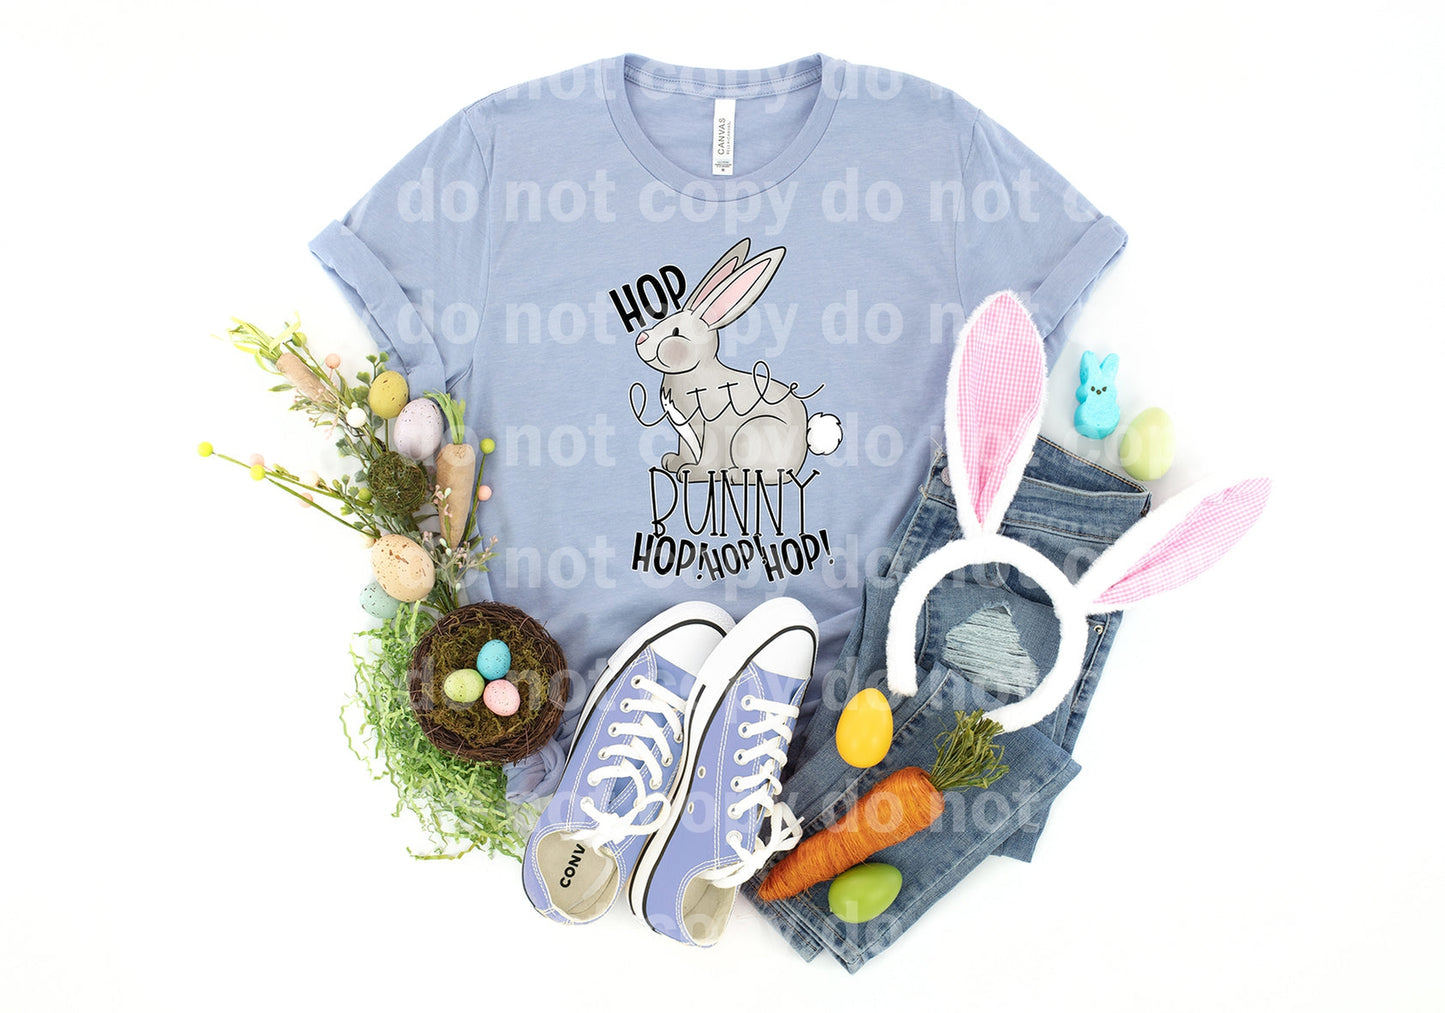 Hop Little Bunny Hop Hop Hop Dream Print or Sublimation Print